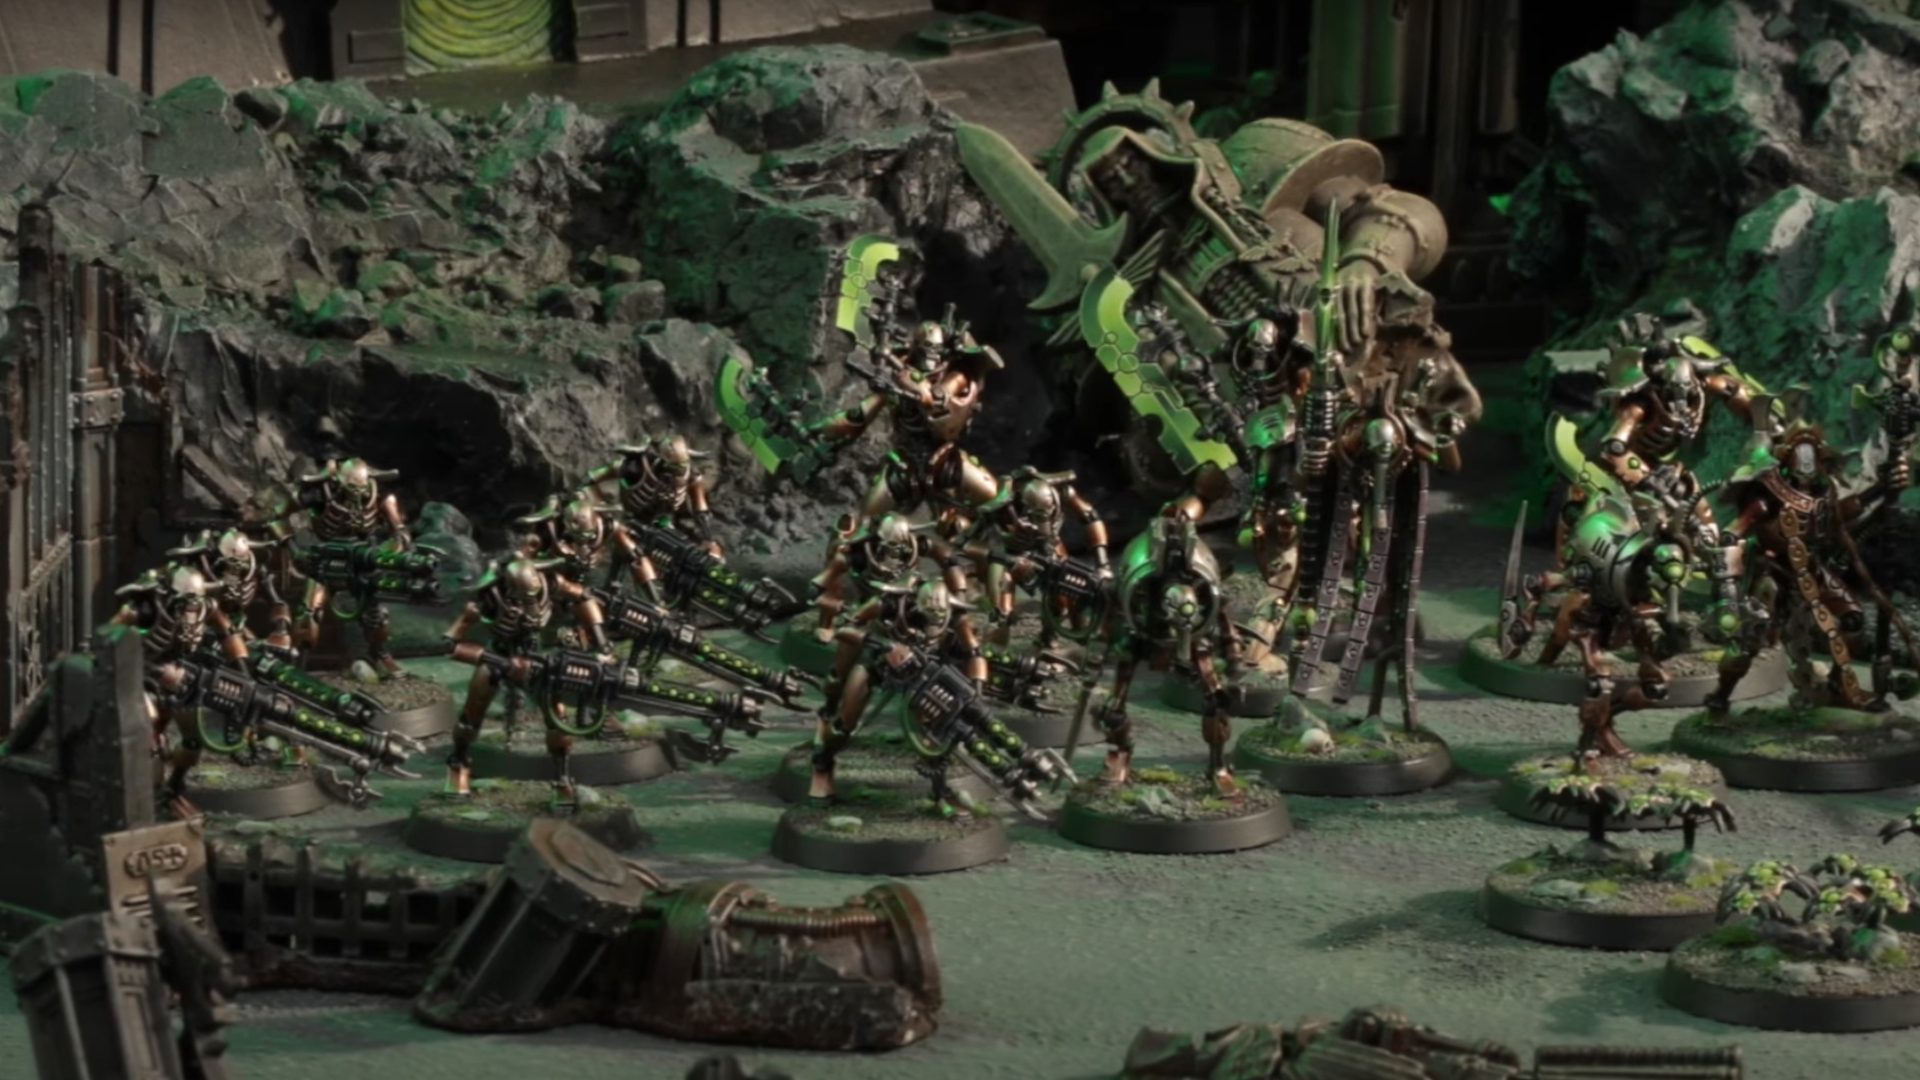 Une armée de miniatures métalliques Necron en mouvement à travers un paysage désolé et en ruine